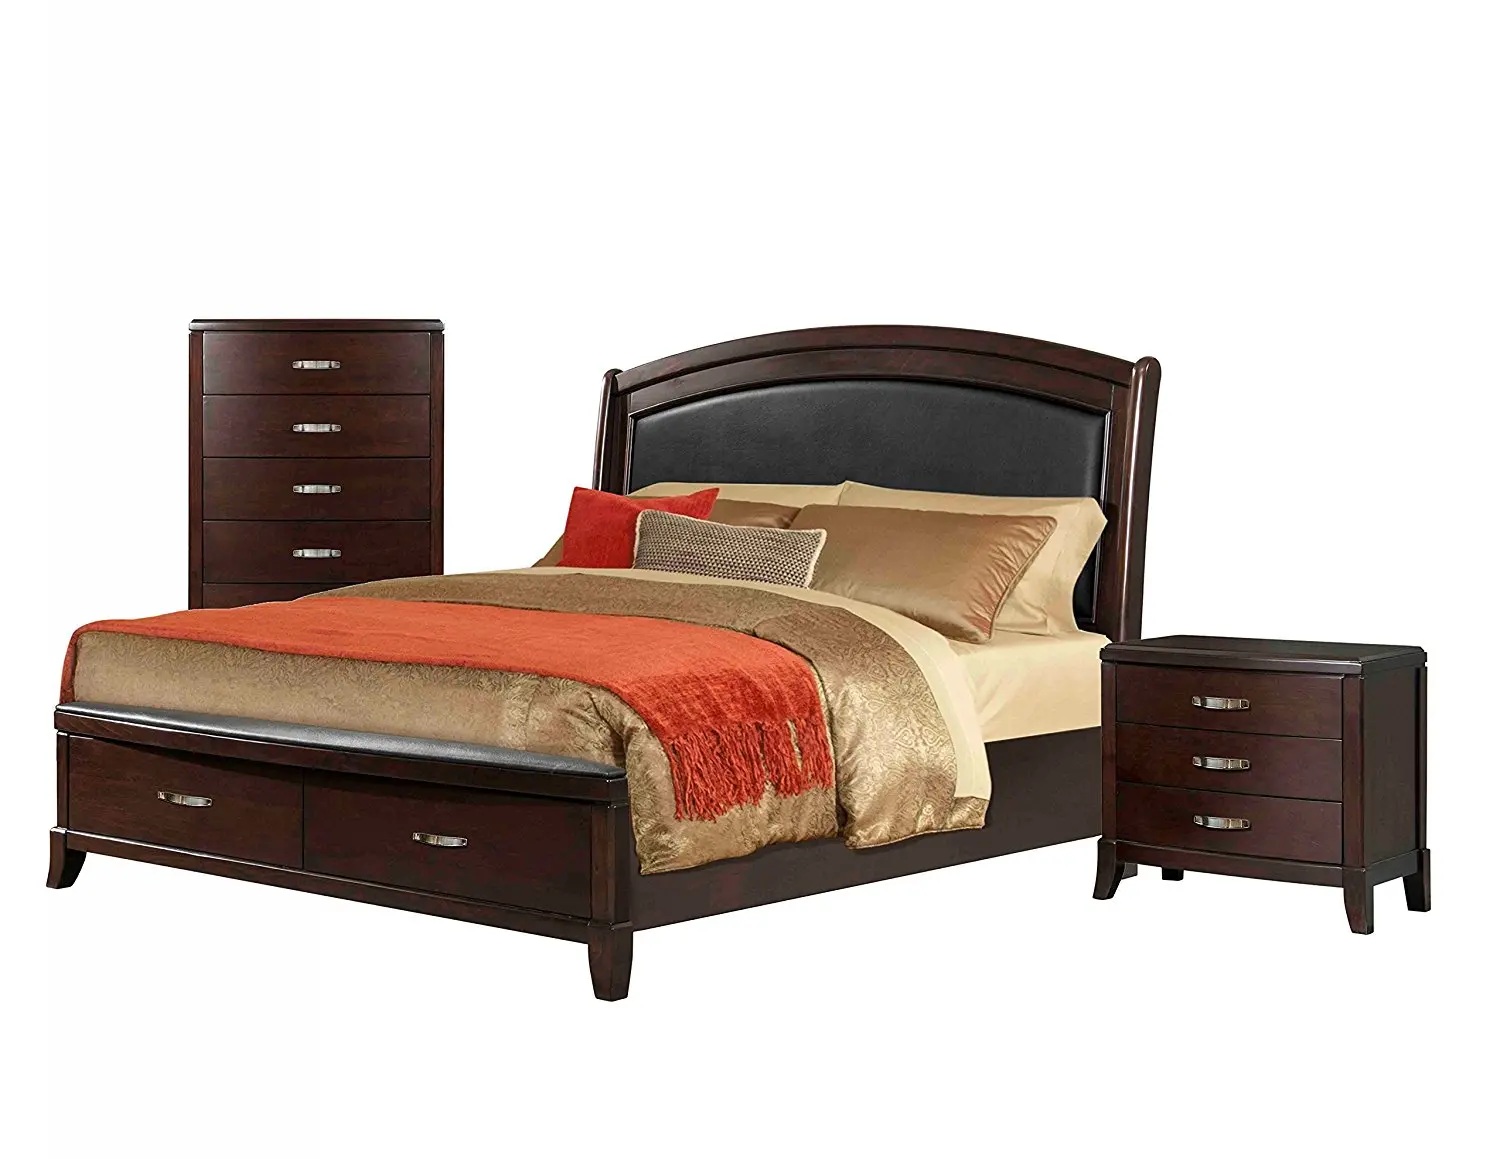 Cheap Bedroom Set Storage Find Bedroom Set Storage Deals On